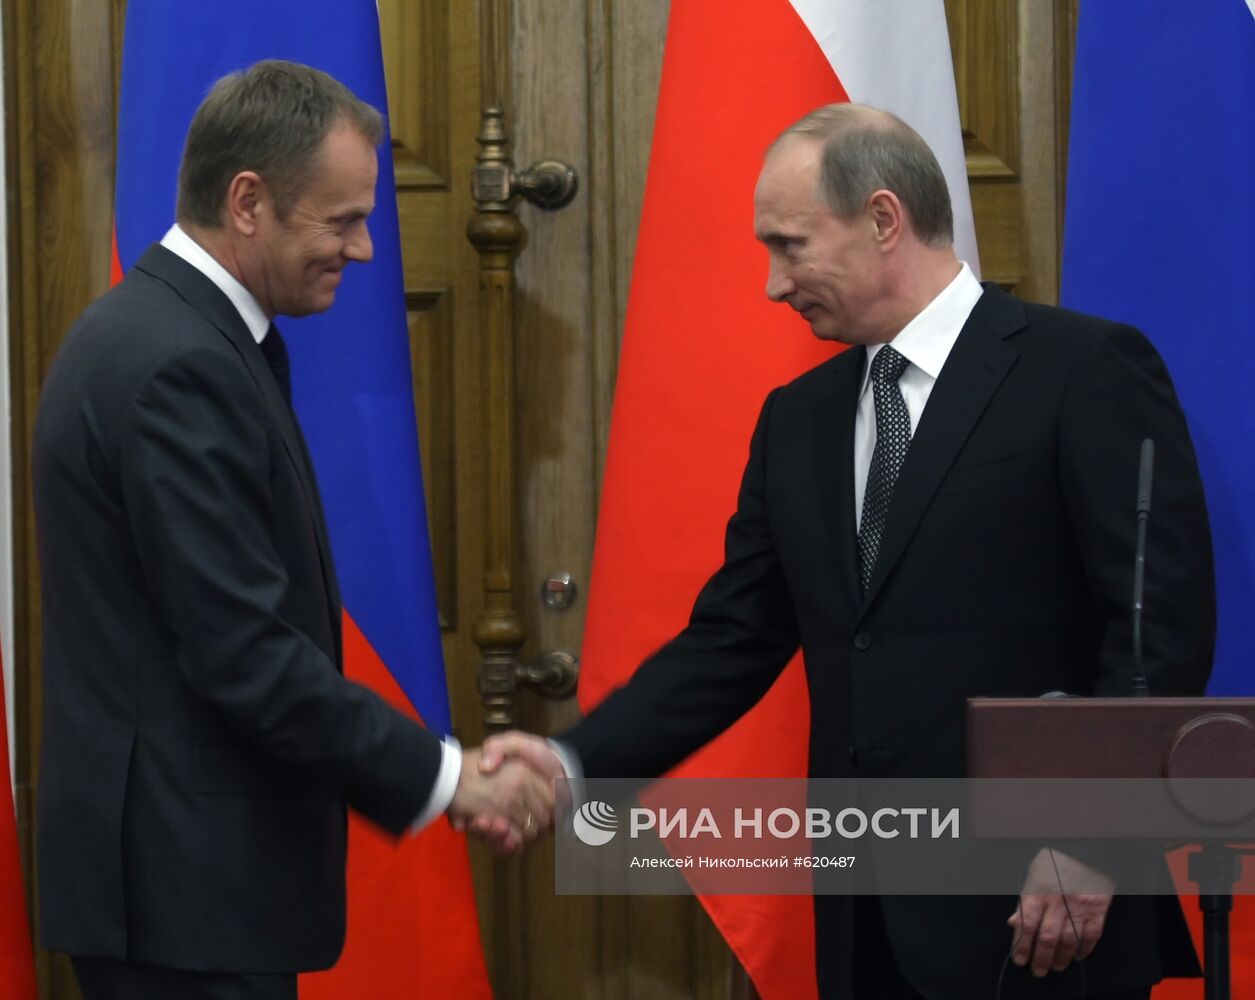 Пресс-конференция Владимира Путина и Дональда Туска